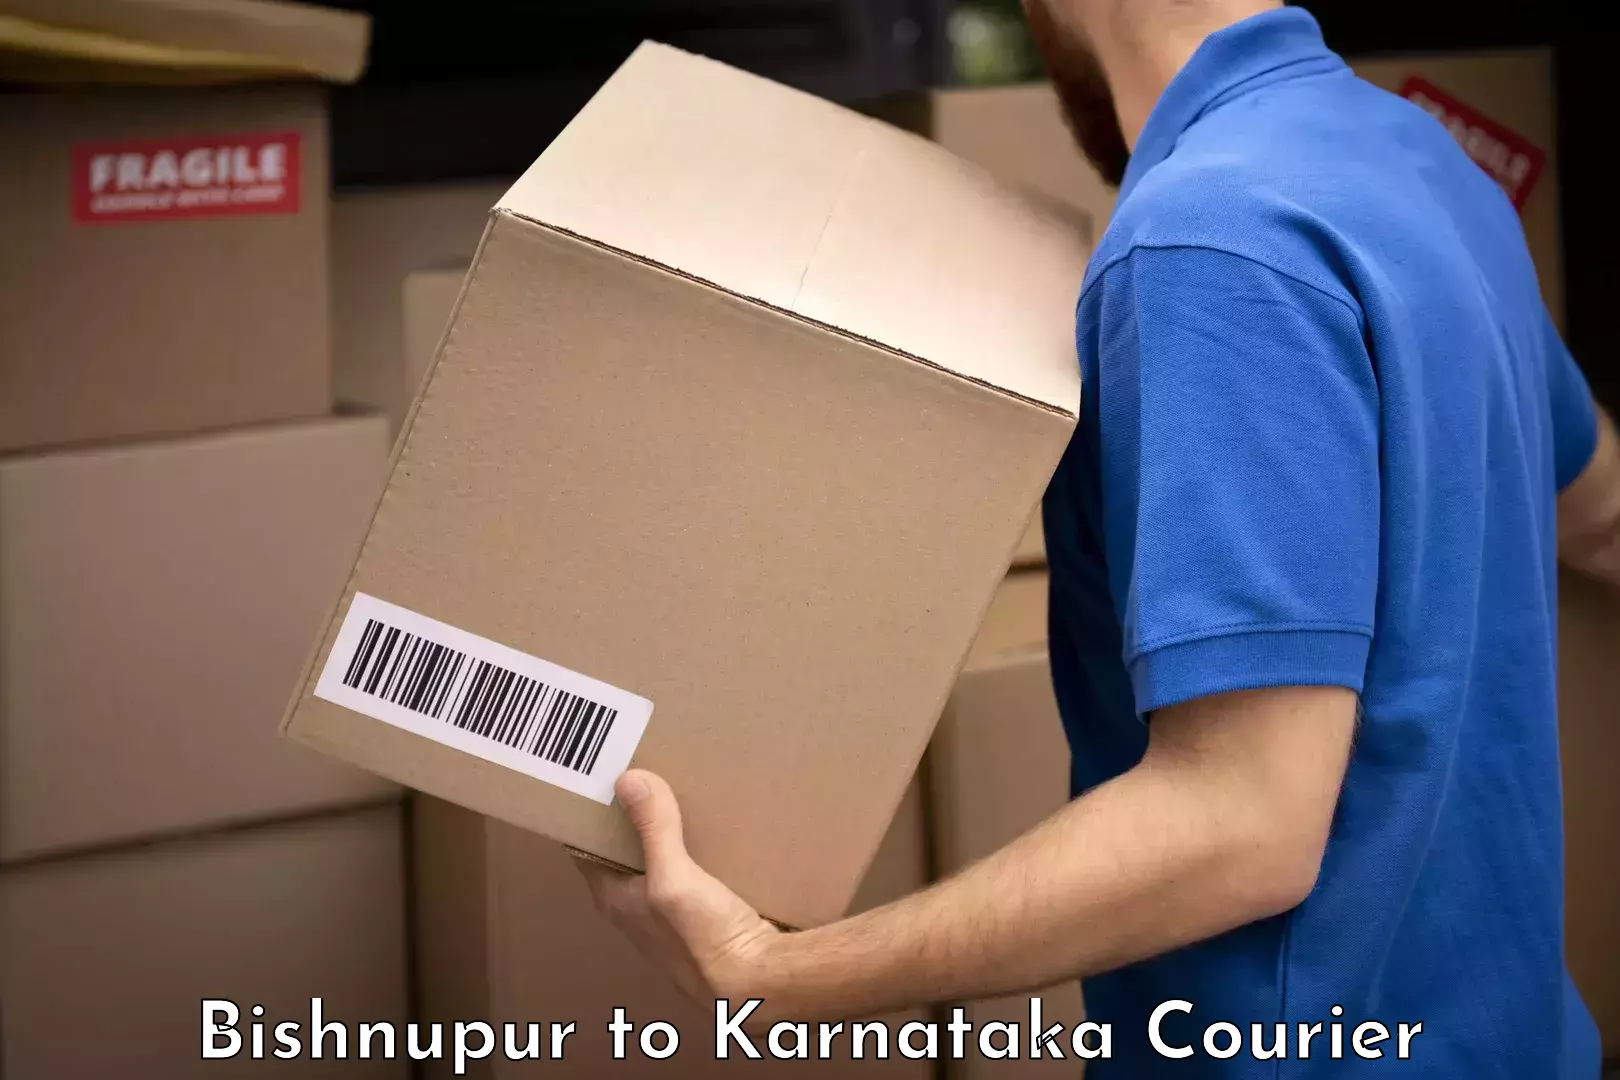 Baggage shipping experts Bishnupur to Karnataka